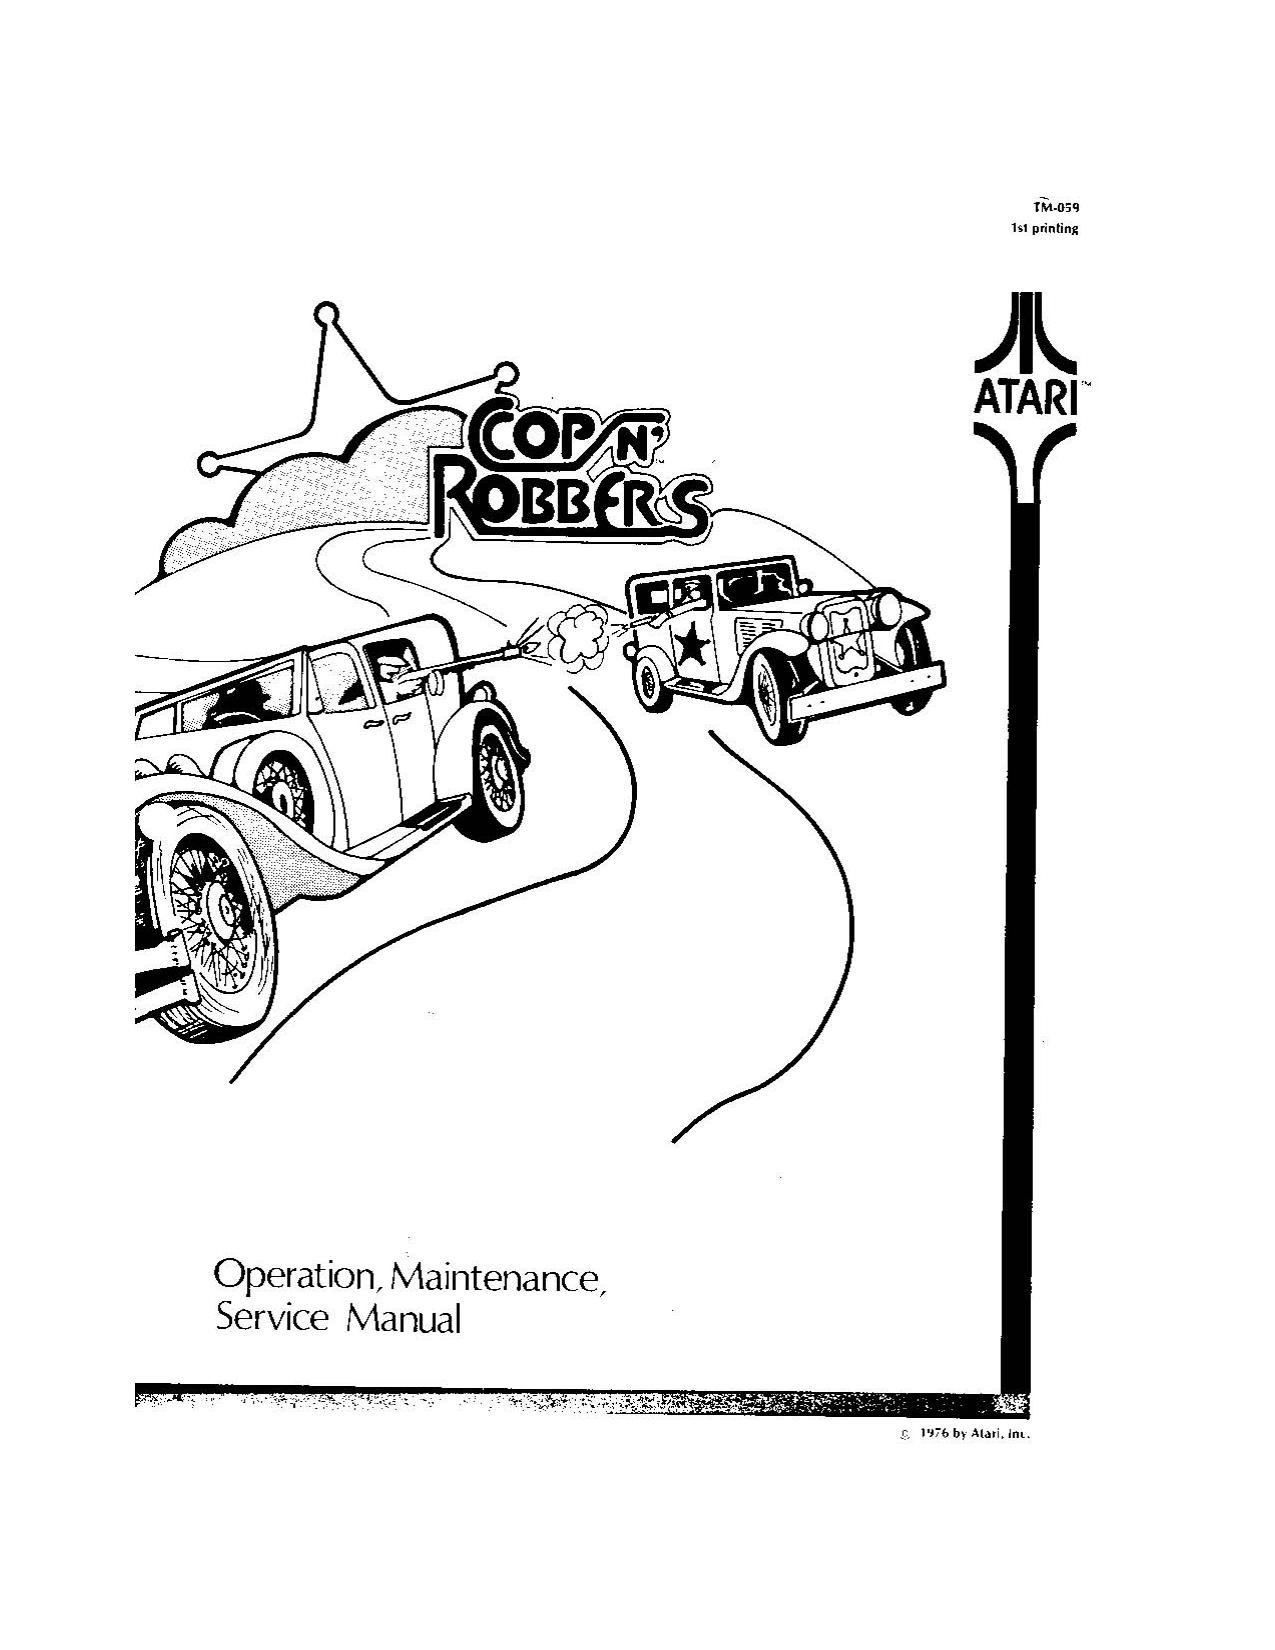 Cop N' Robbers (TM-059 1st Printing) (Op-Maint-Serv) (U)